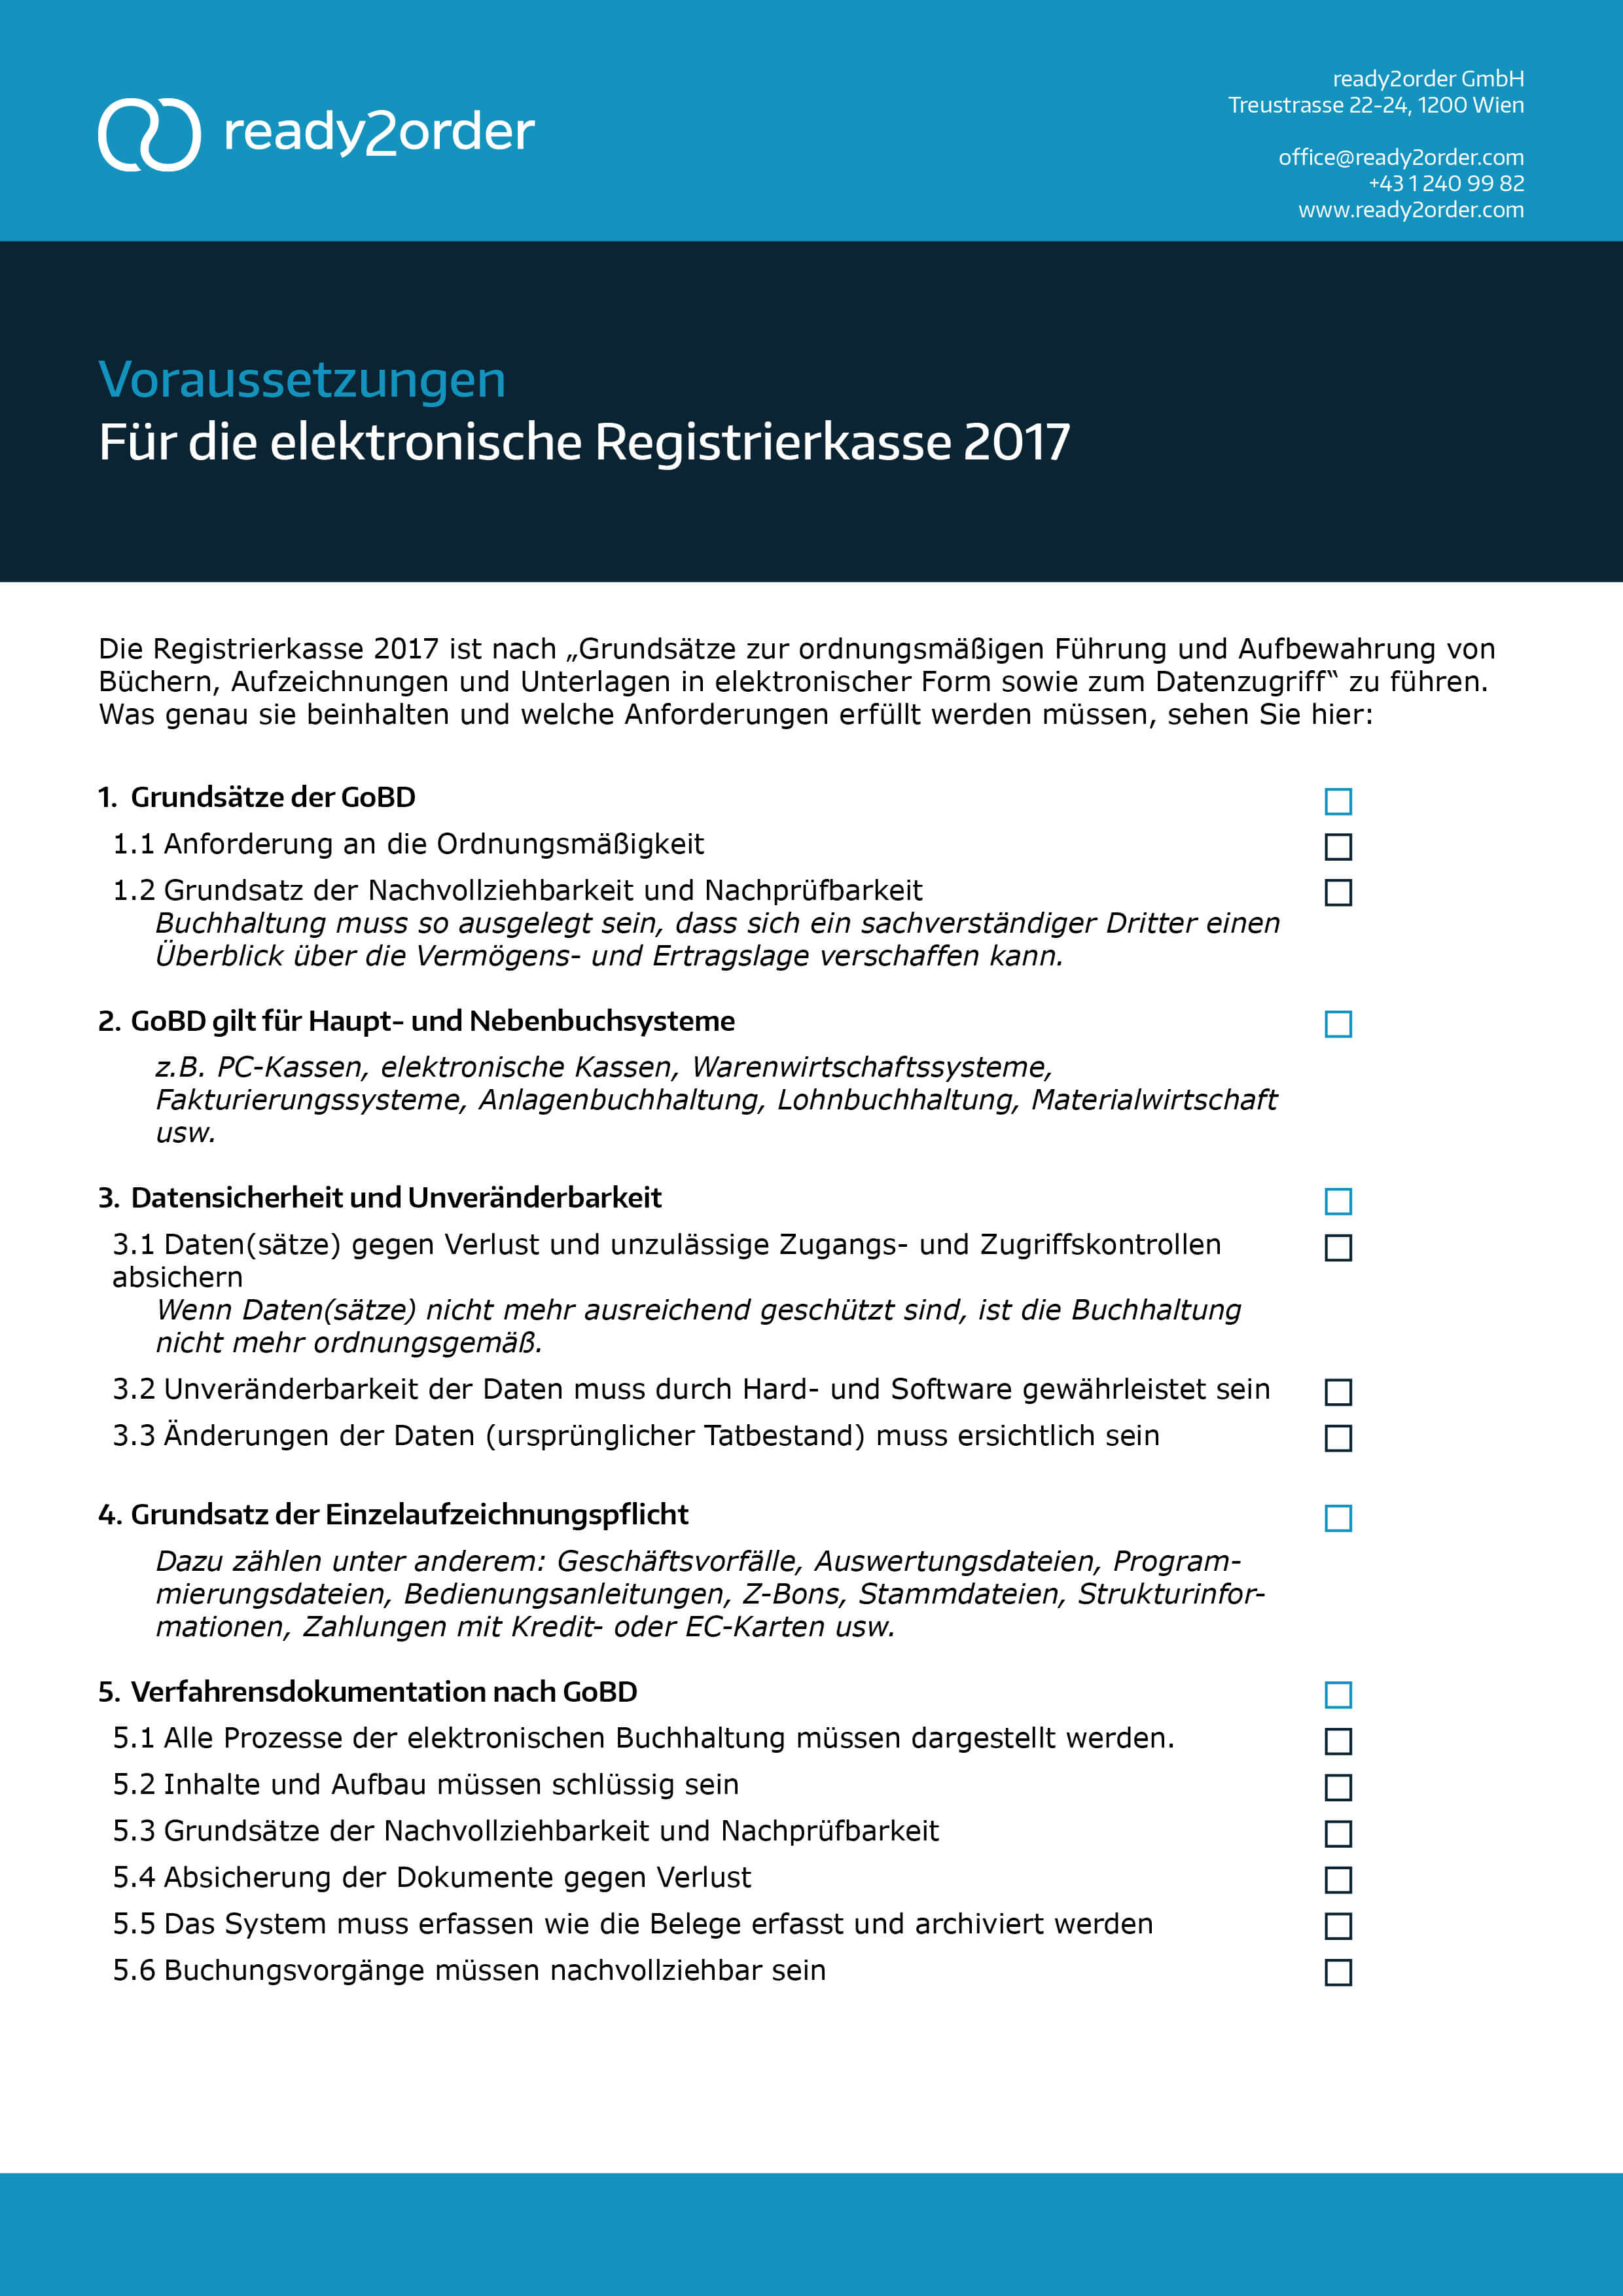 Registrierkasse 2017 - Anforderungen